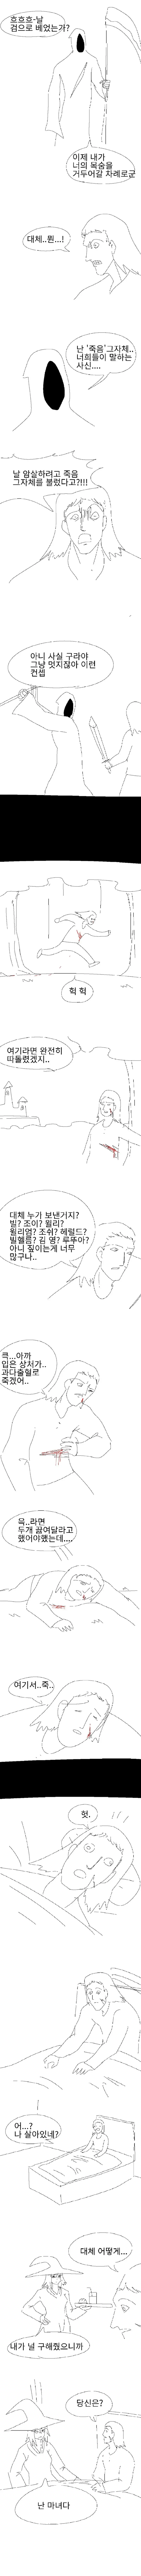 화끈한 여기사가 죽어라 하는 만화 manhwa | mbong.kr 엠봉